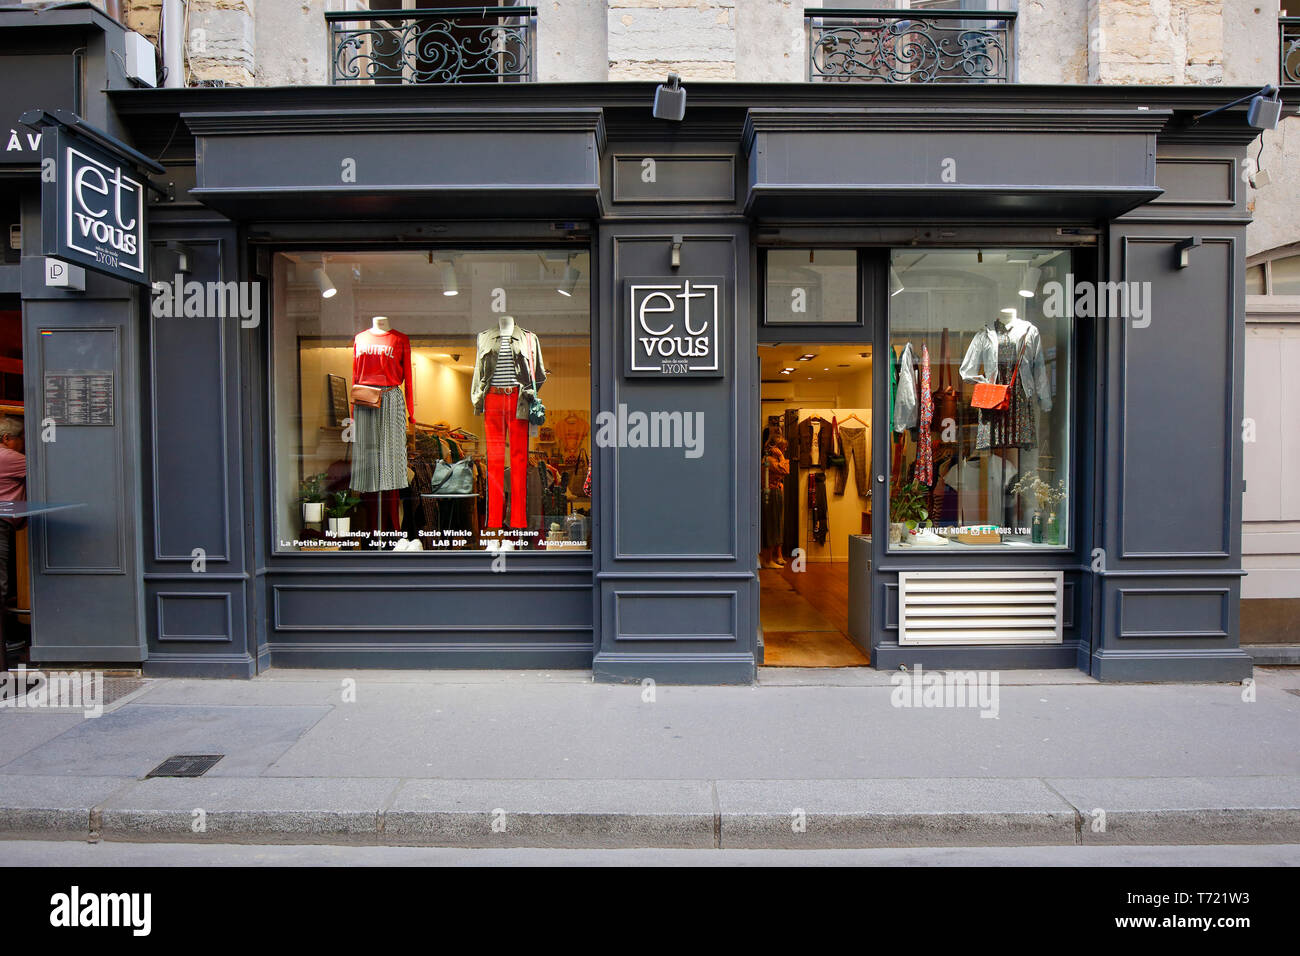 Et Vous, 4 Place des Celestini, Lione, Francia. esterna di una boutique di abbigliamento. Foto Stock